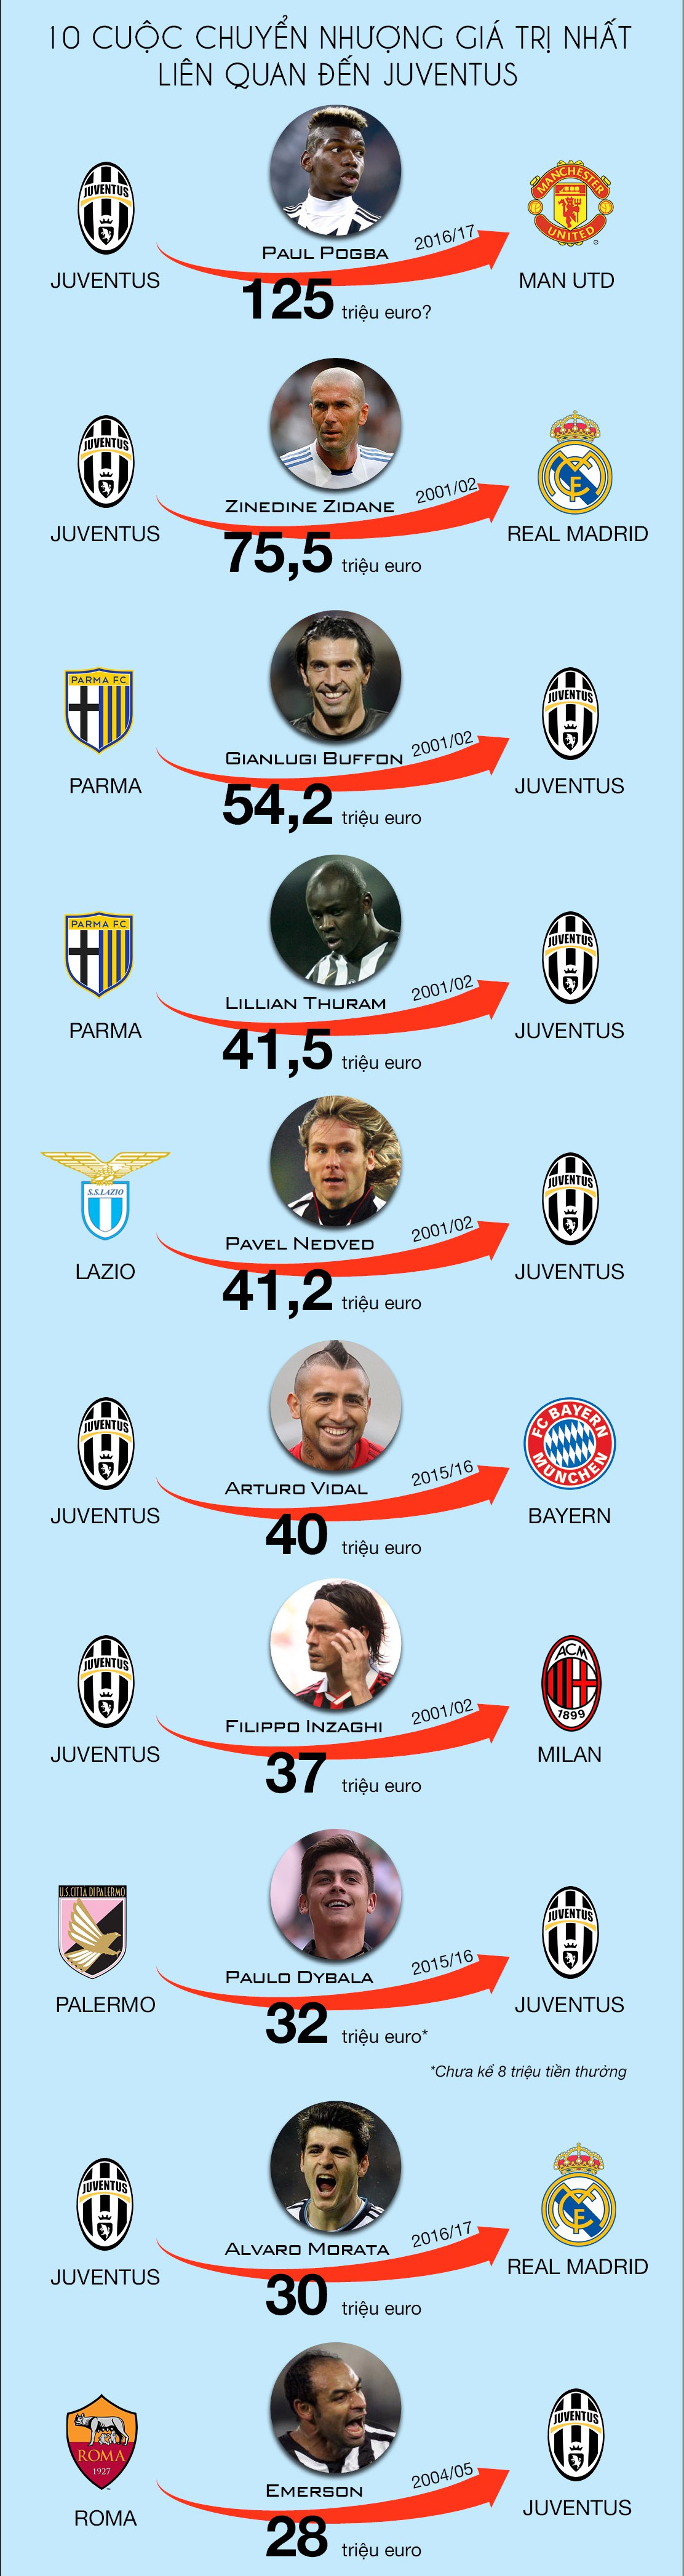 10 cuộc chuyển nhượng giá trị nhất liên quan đến Juventus